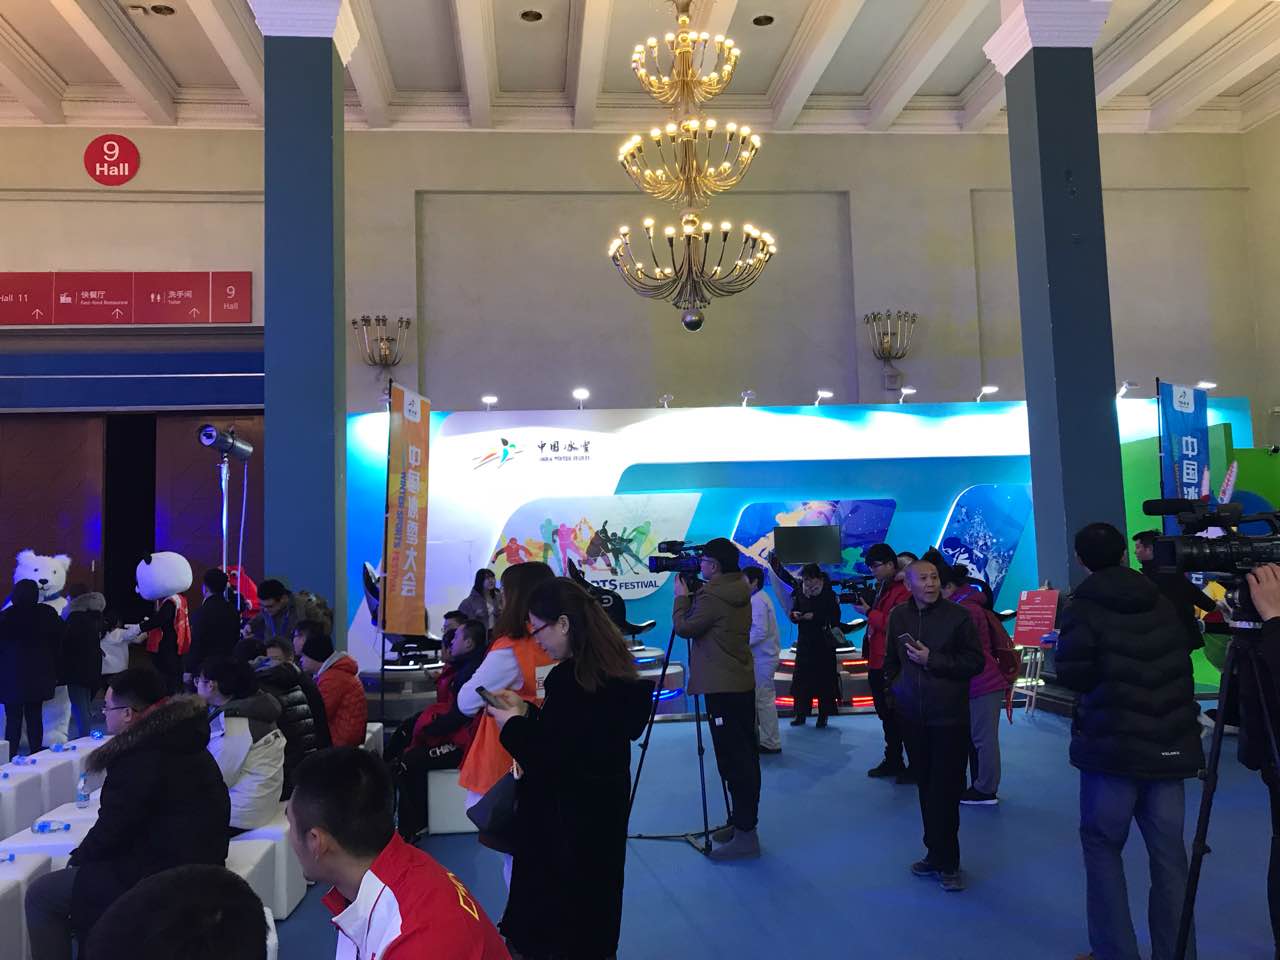 中国国际冰雪产业大会